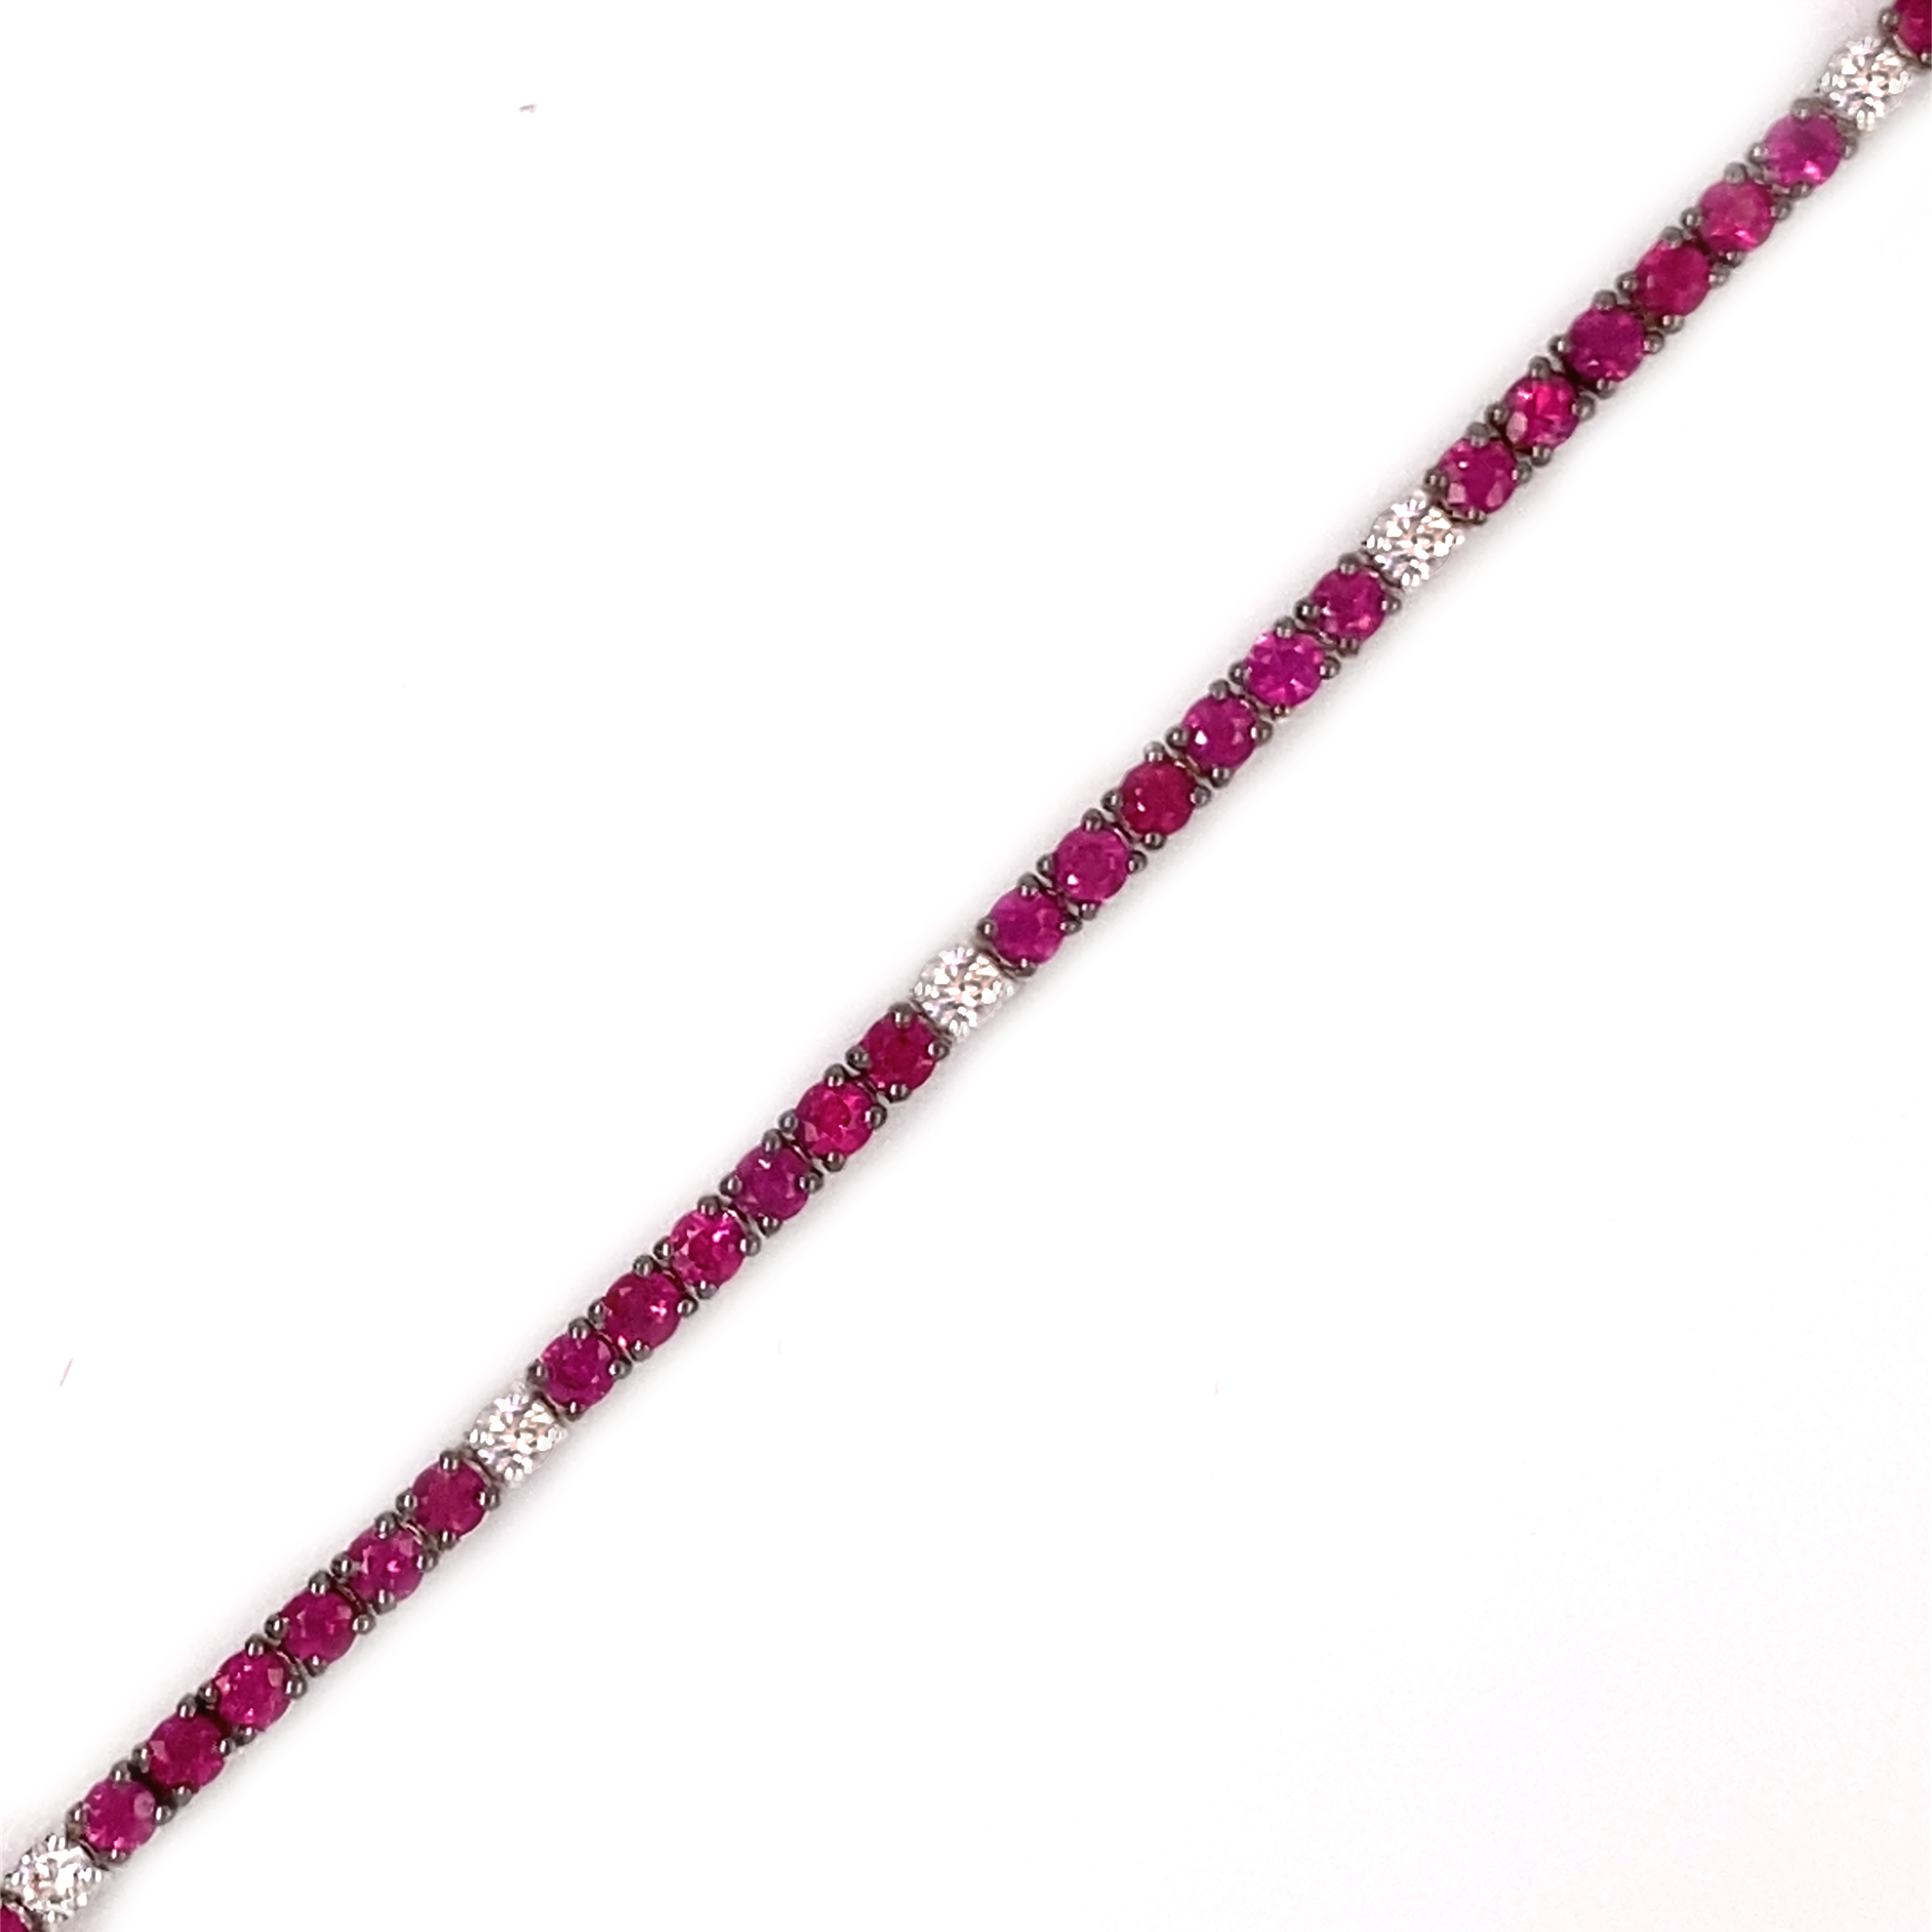 Ruby Tennis Bracelet w/ Diamonds 18k White Gold - Kappy's Fine Jewelry